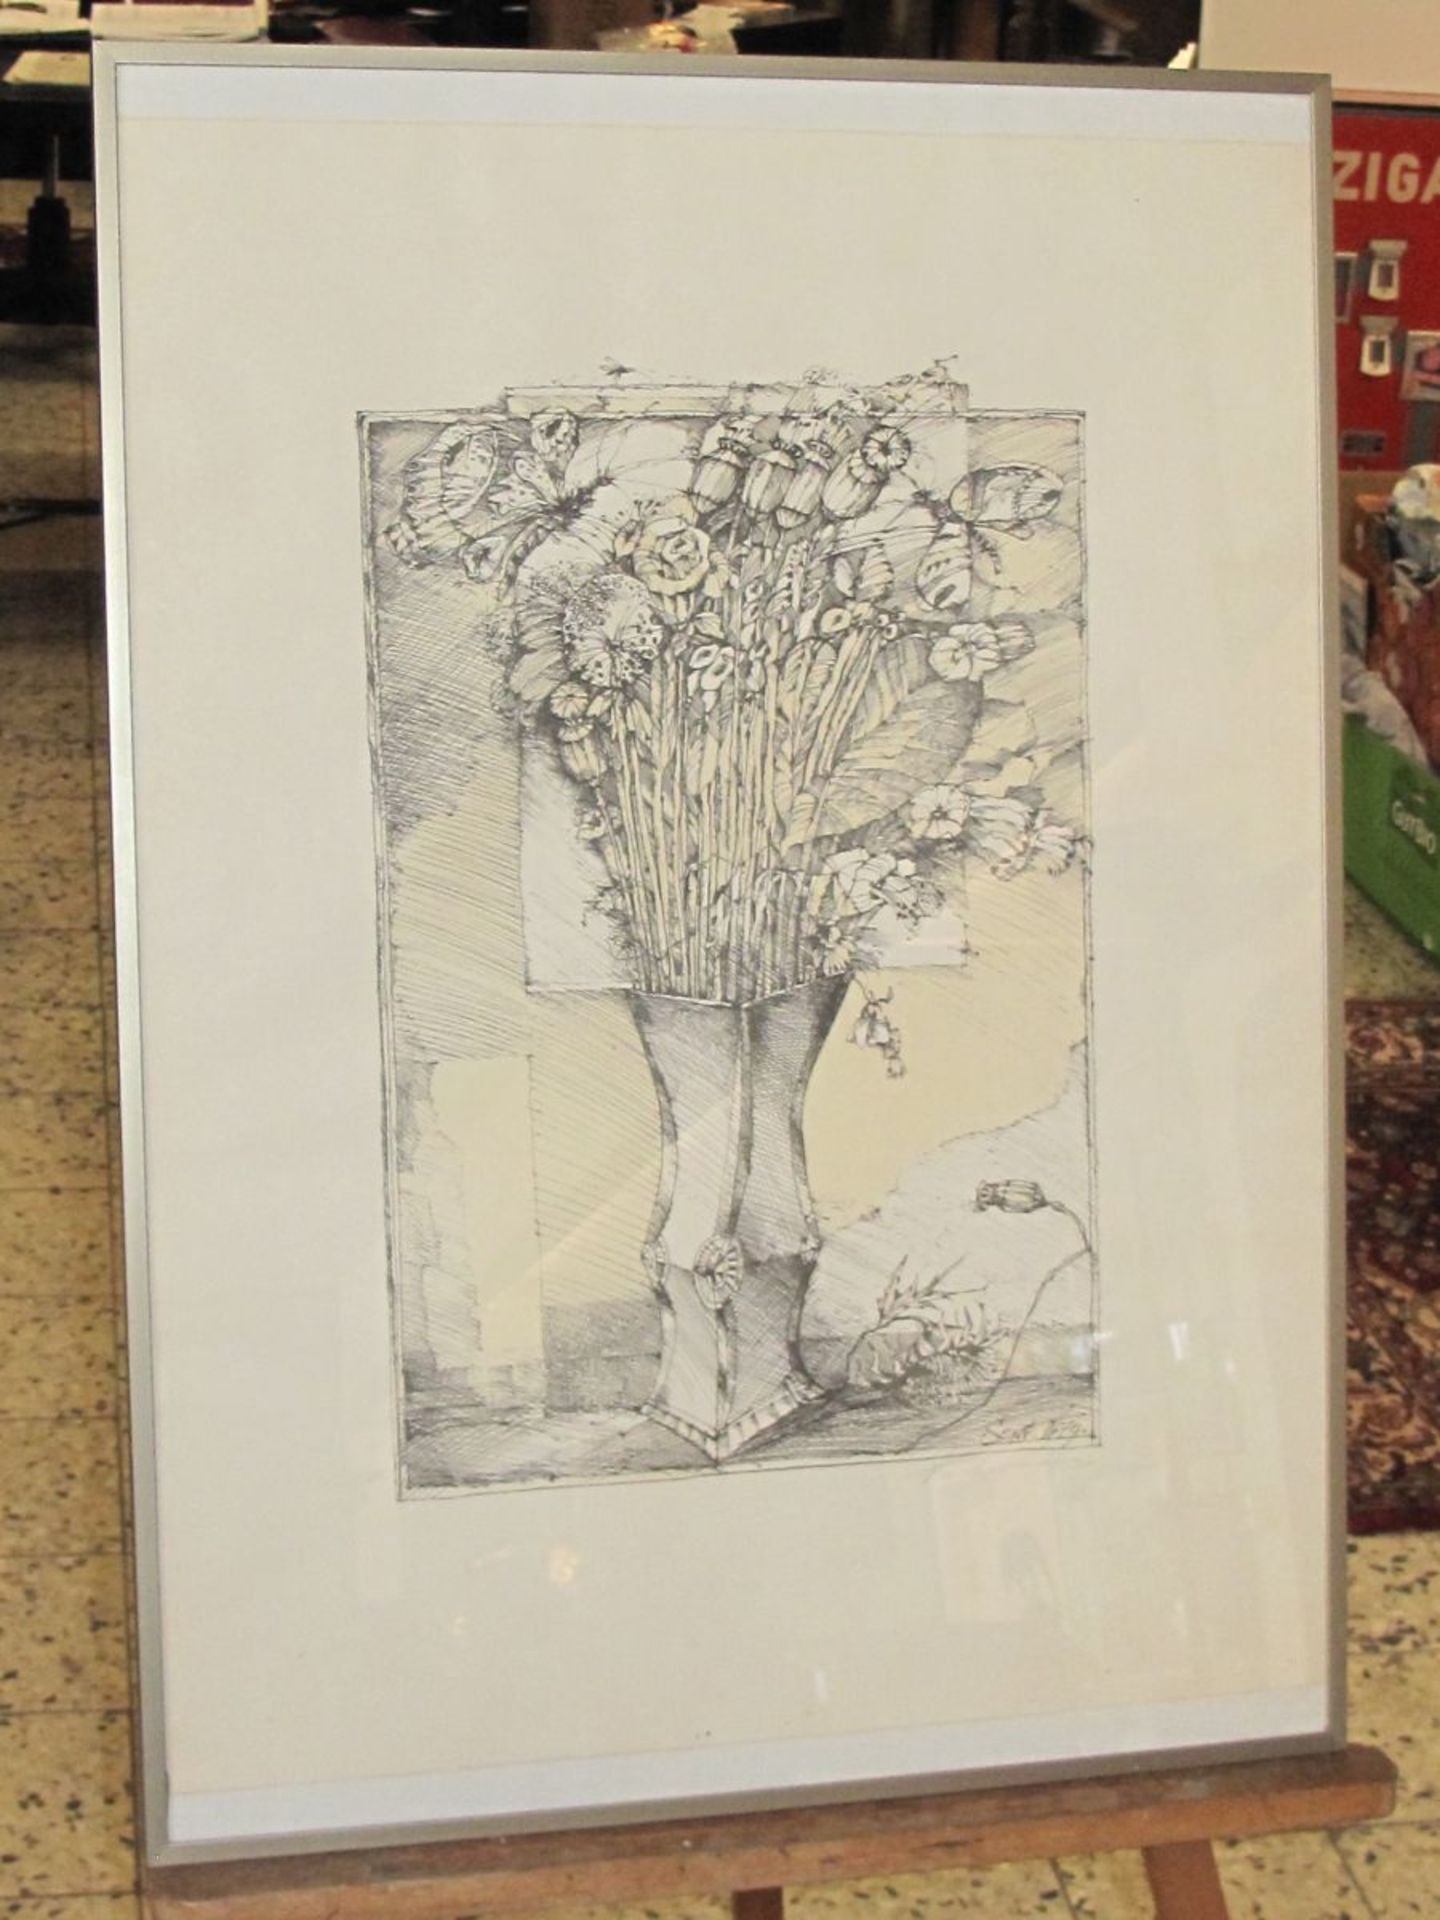 unleserl.signierte Litho "Blumen in Vase", gerahmt/Glas, RG 72 x 51cm - Bild 3 aus 3